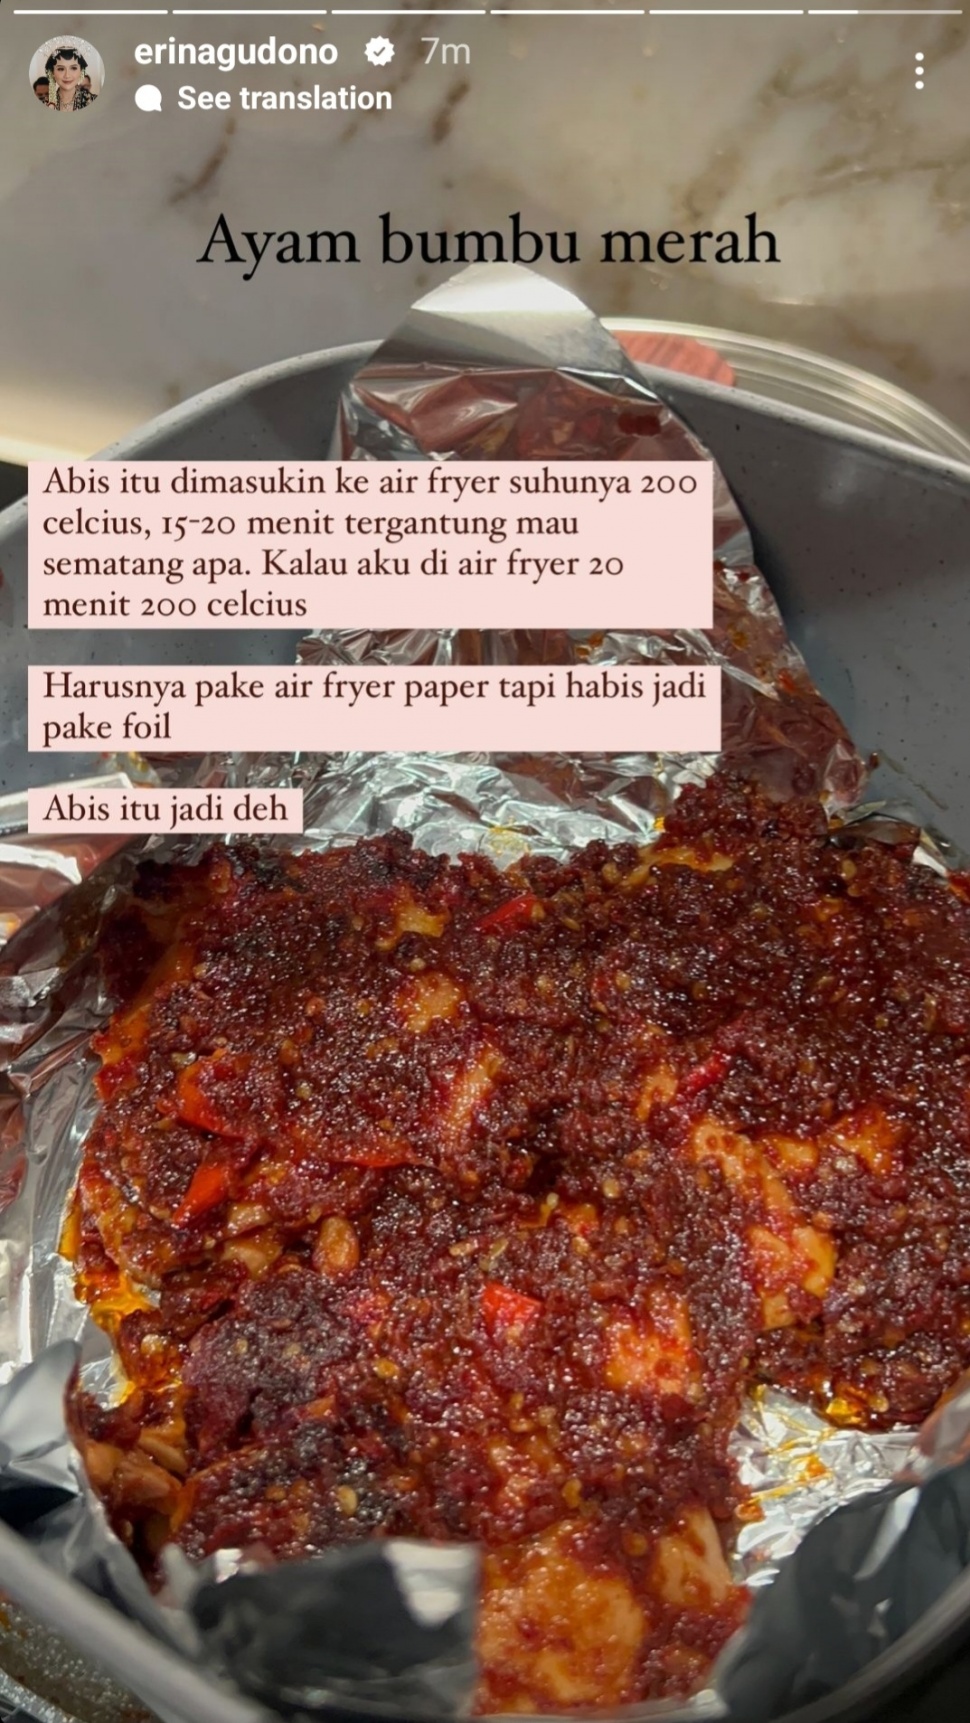 Resep Ayam Bumbu Merah ala Erina Gudono yang Jadi Menu Favorit Kaesang Pangarep. (Dok. Instagram/Erina Gudono)